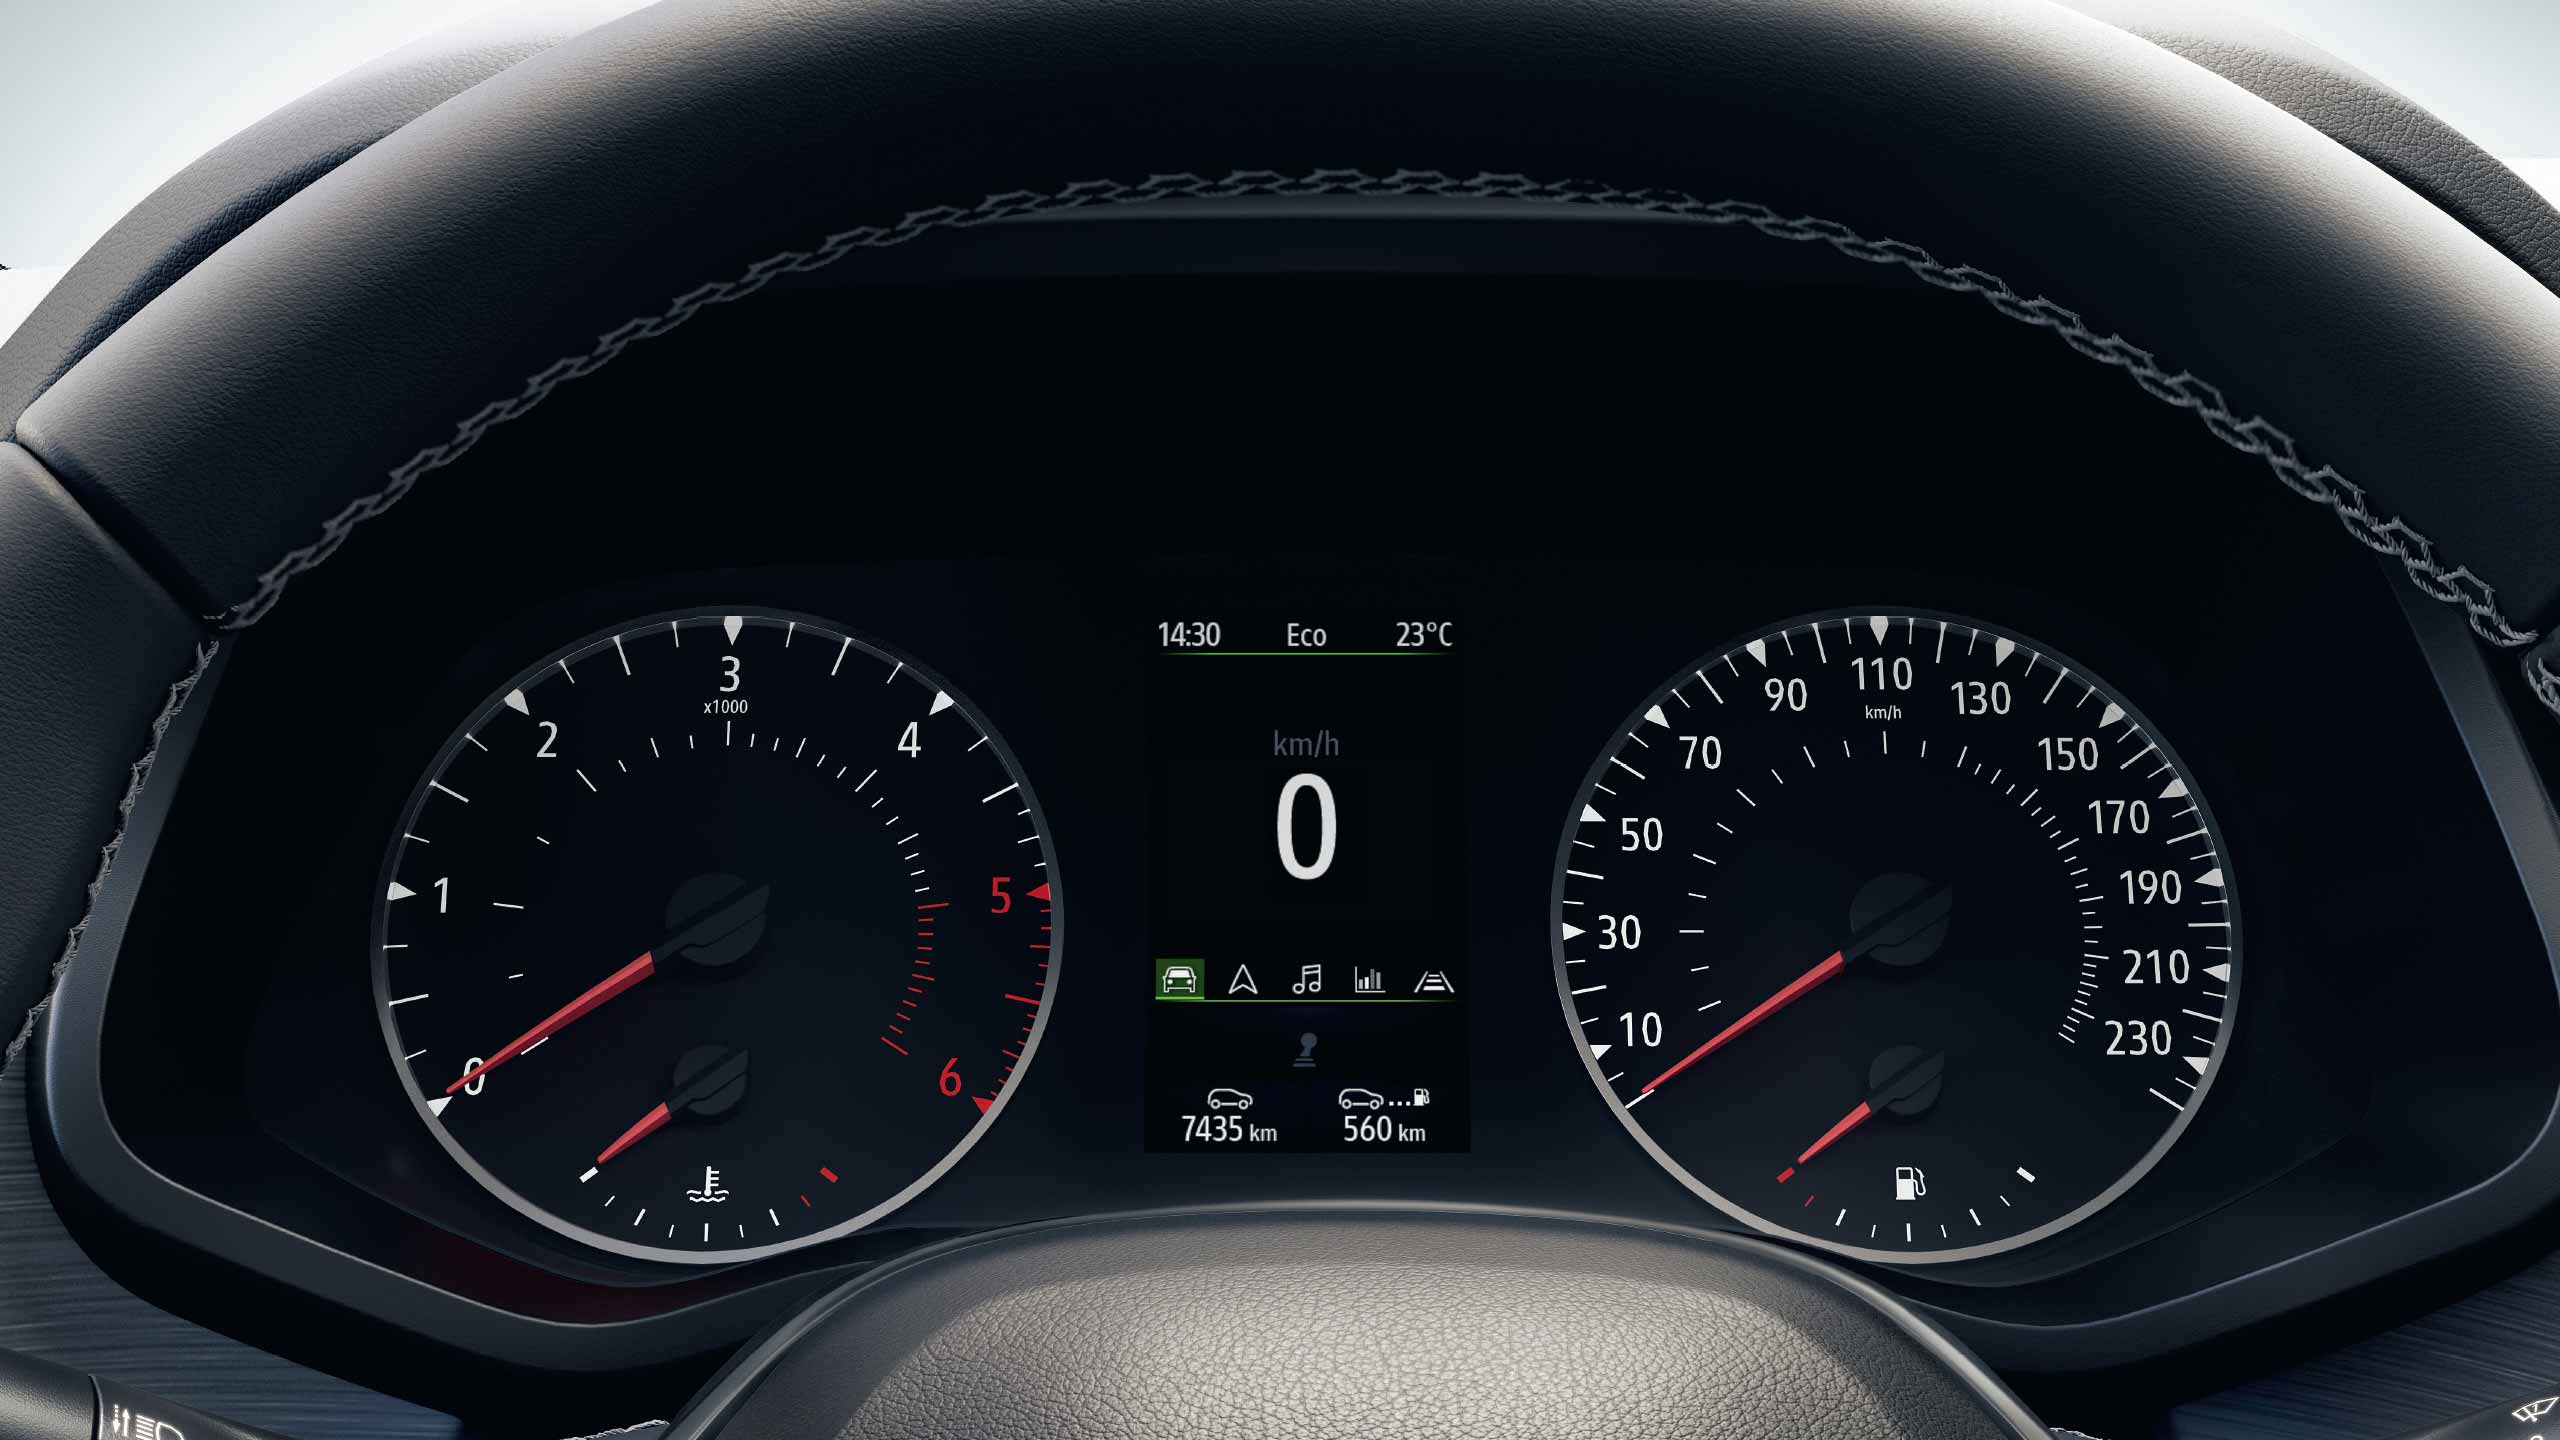 sürücü gösterge paneli – 4,2″ renkli gösterge ekranıyla sürüşle ilgili tüm detaylar elinizin altında.